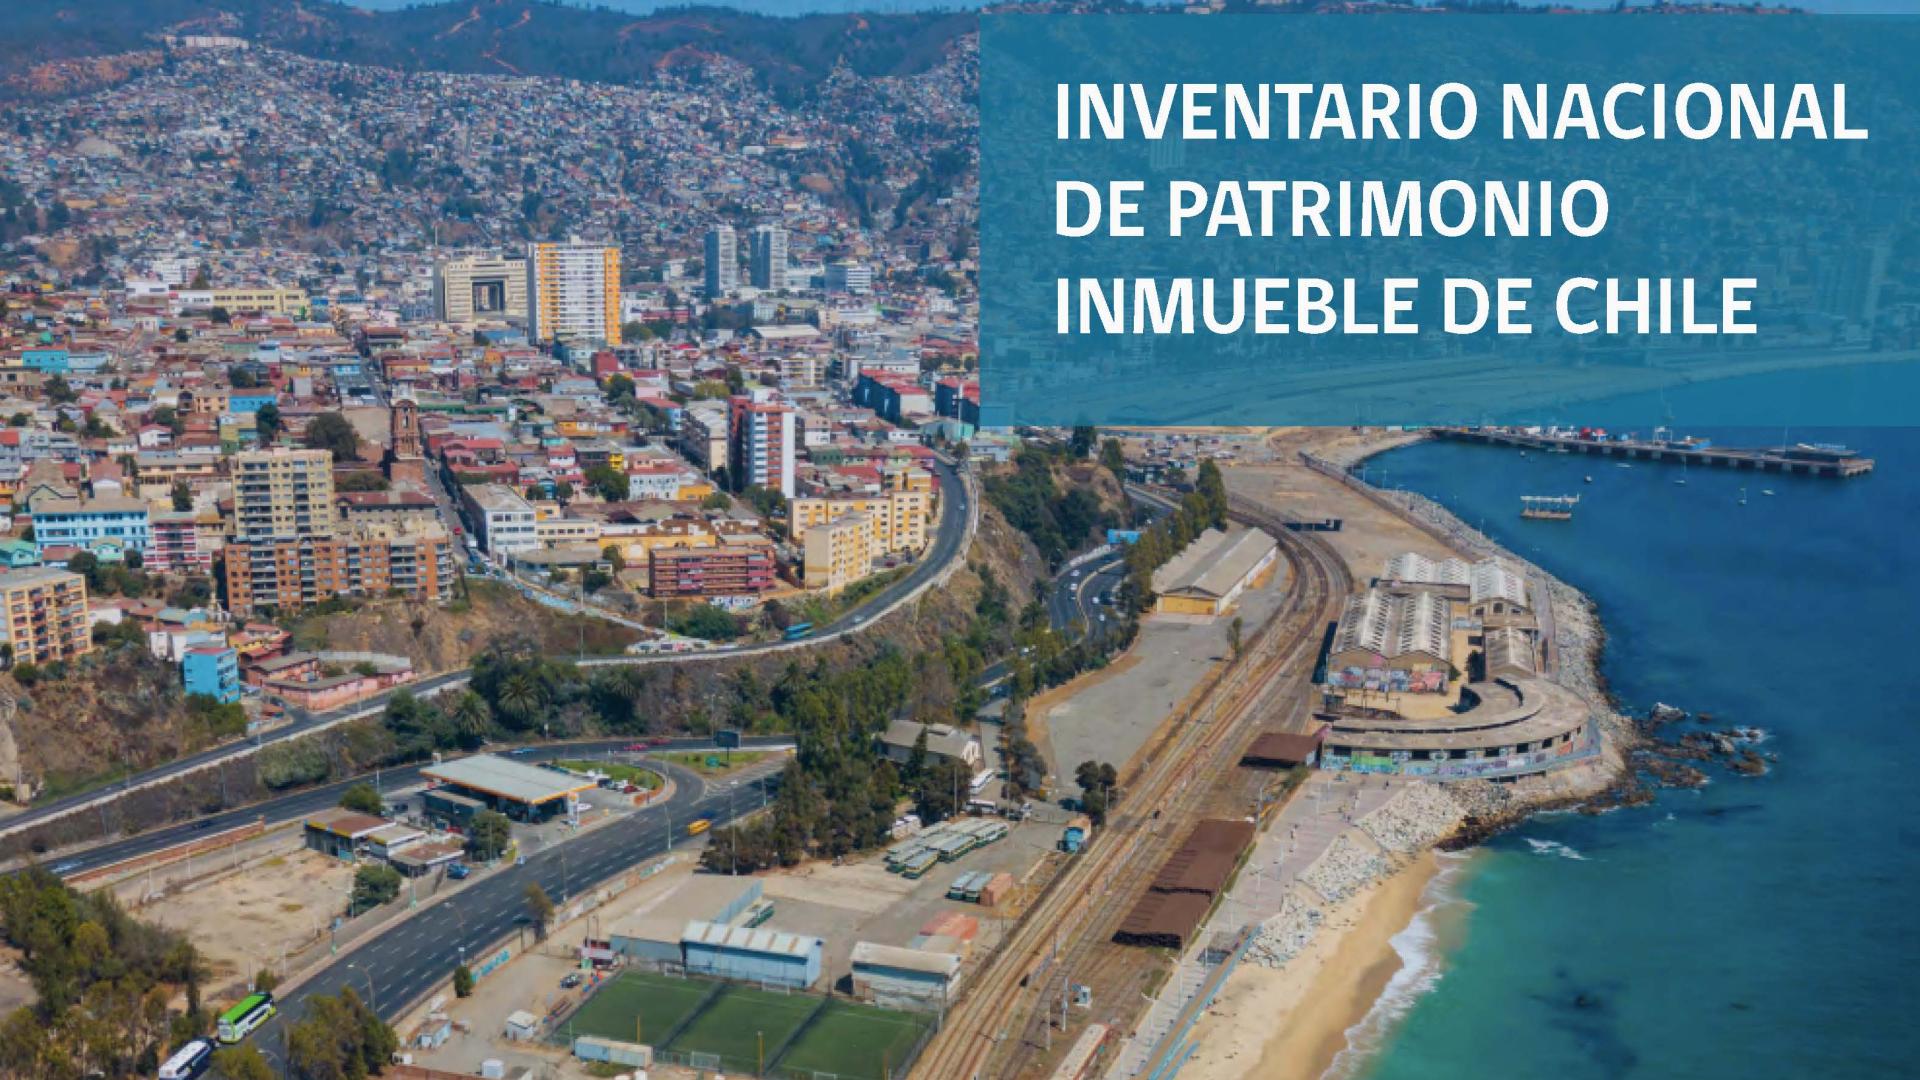 Inventario Nacional de Patrimonio Inmueble de Chile (Valparaíso)